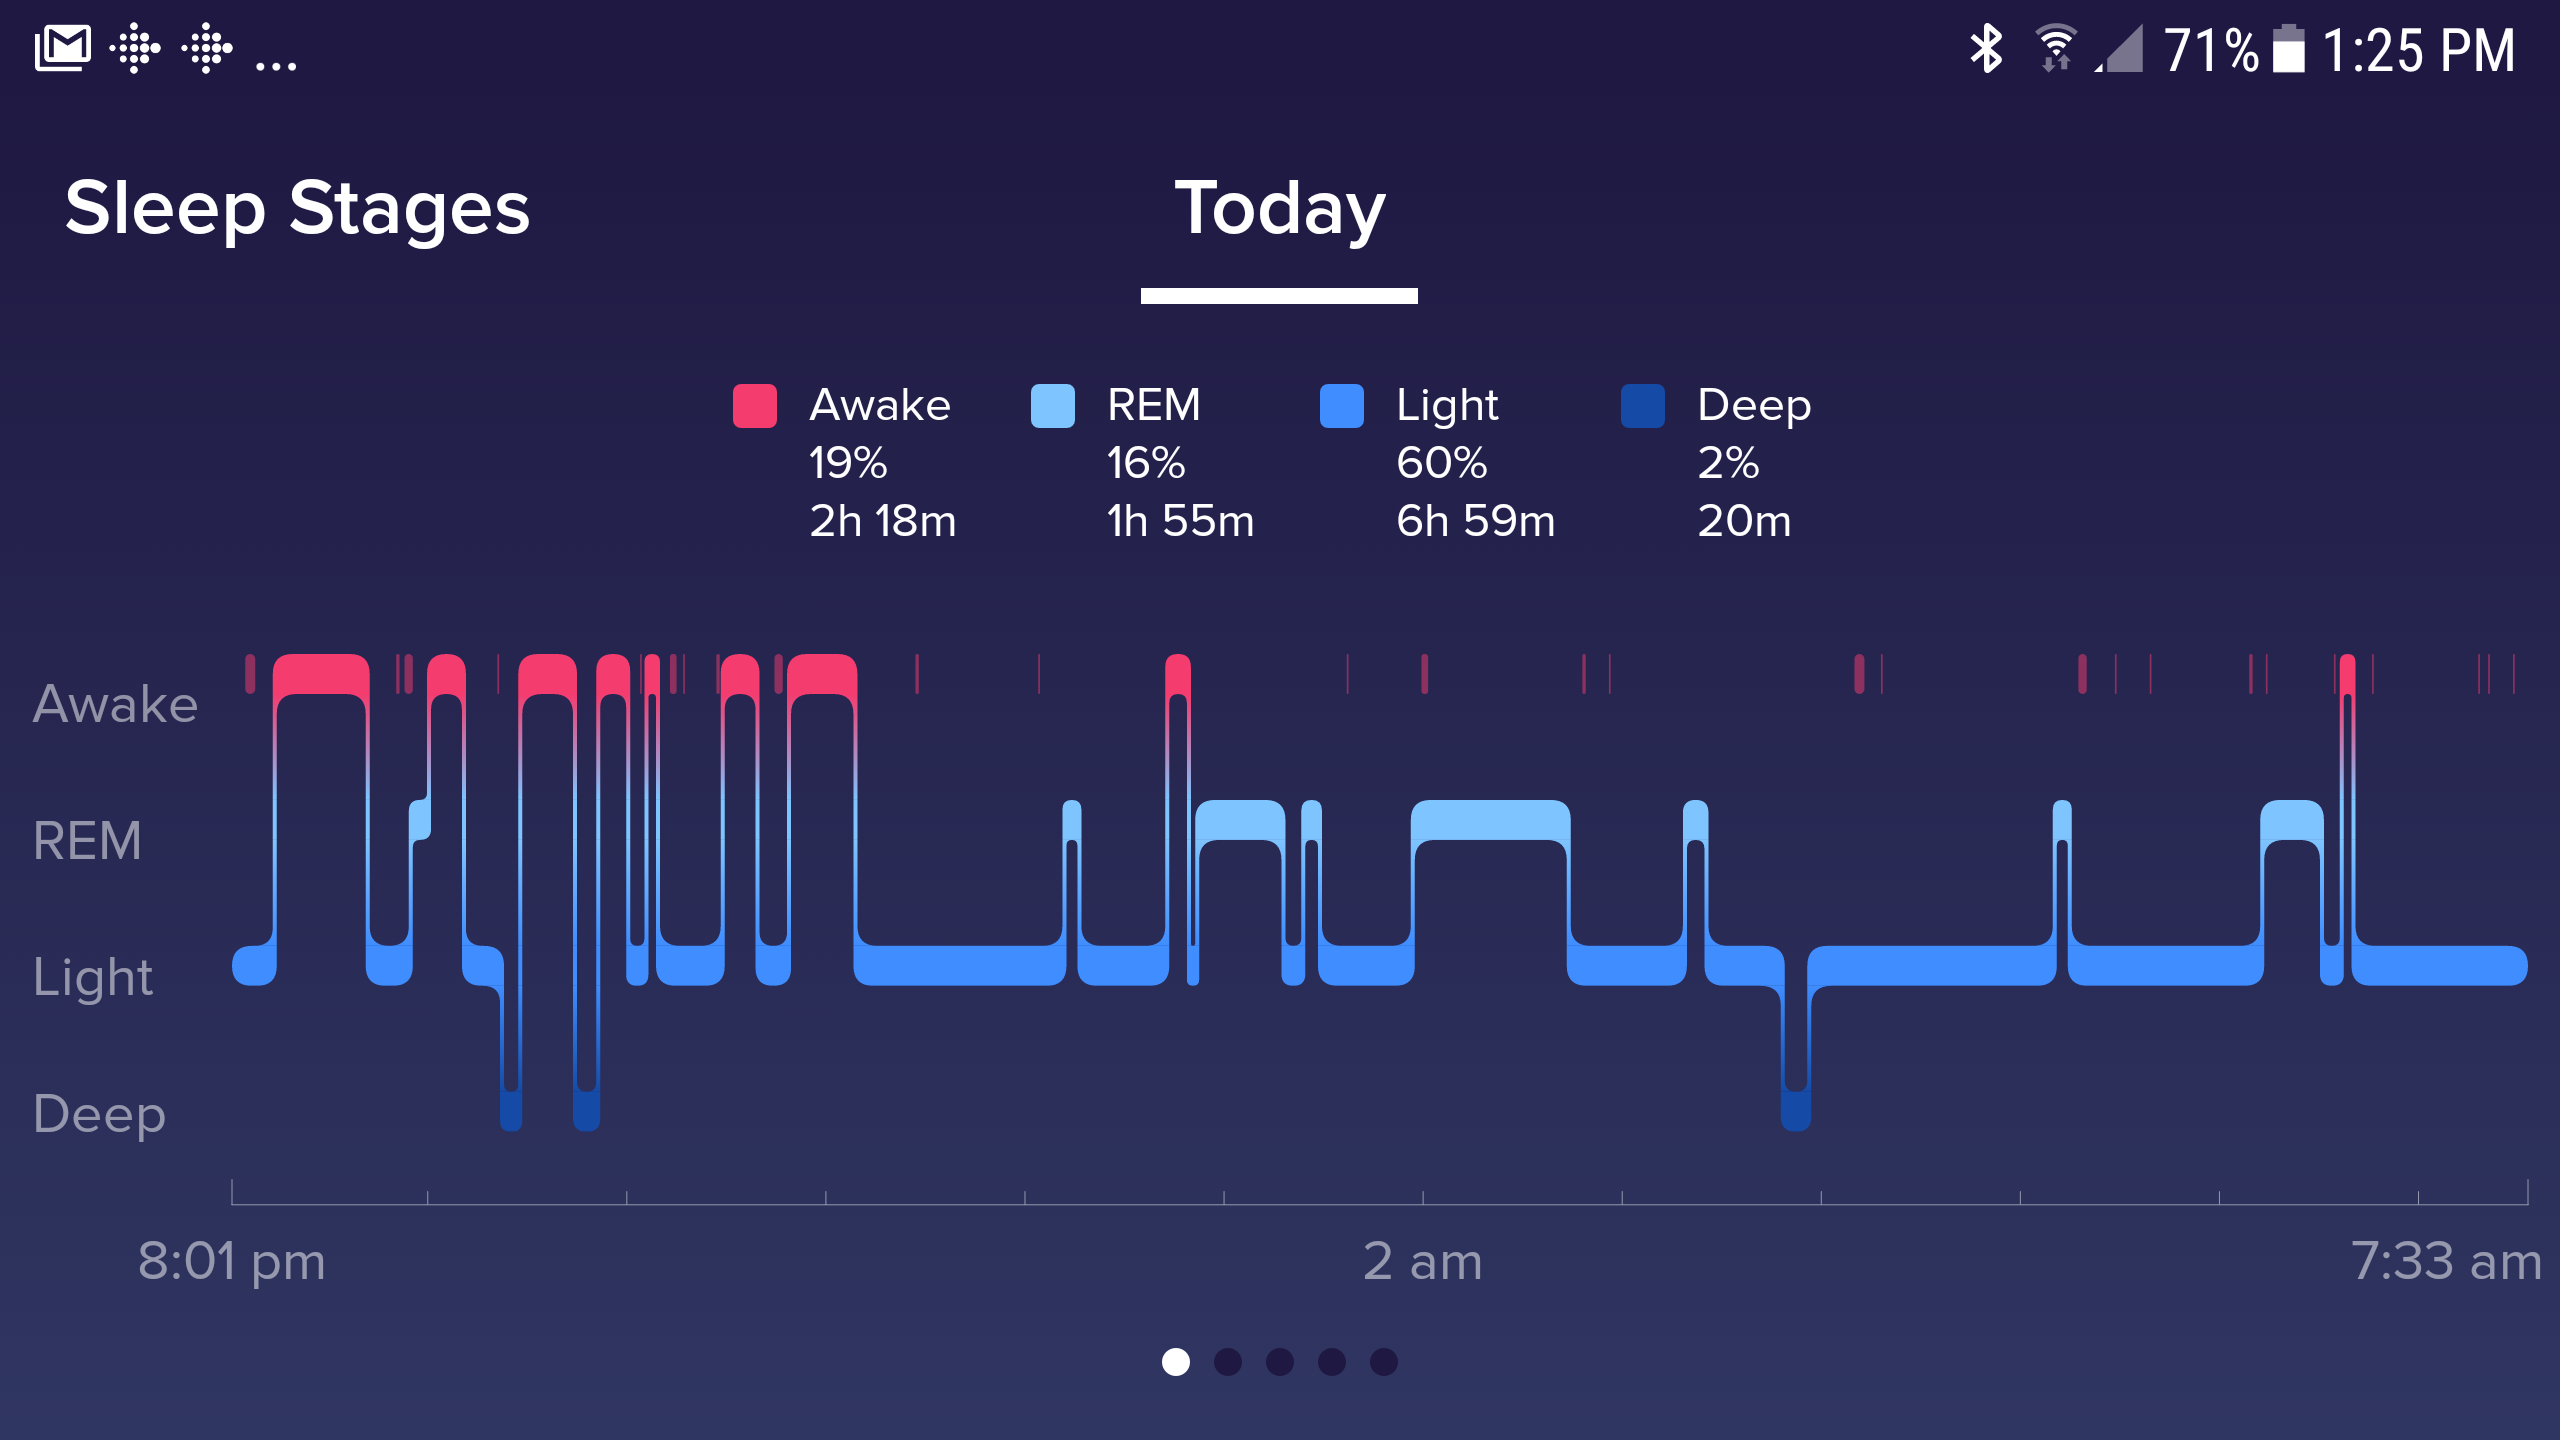 Sleep Stages - Apple Community